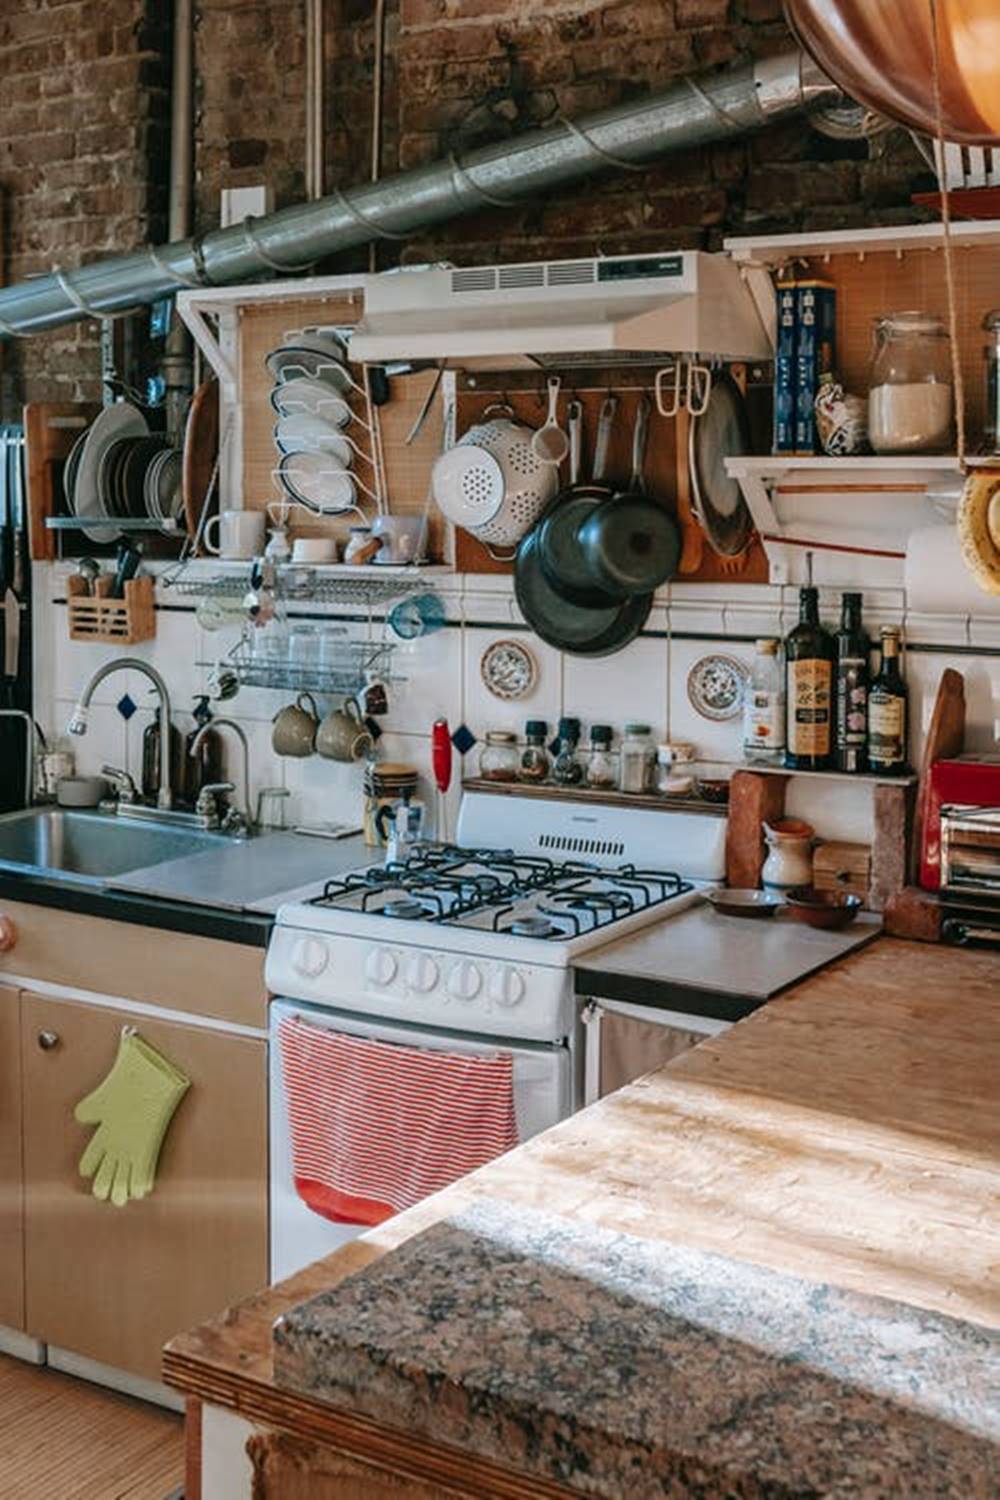 ترتيب المطبخ: بعض الأفكار البسيطة للحصول على مطبخ منظم